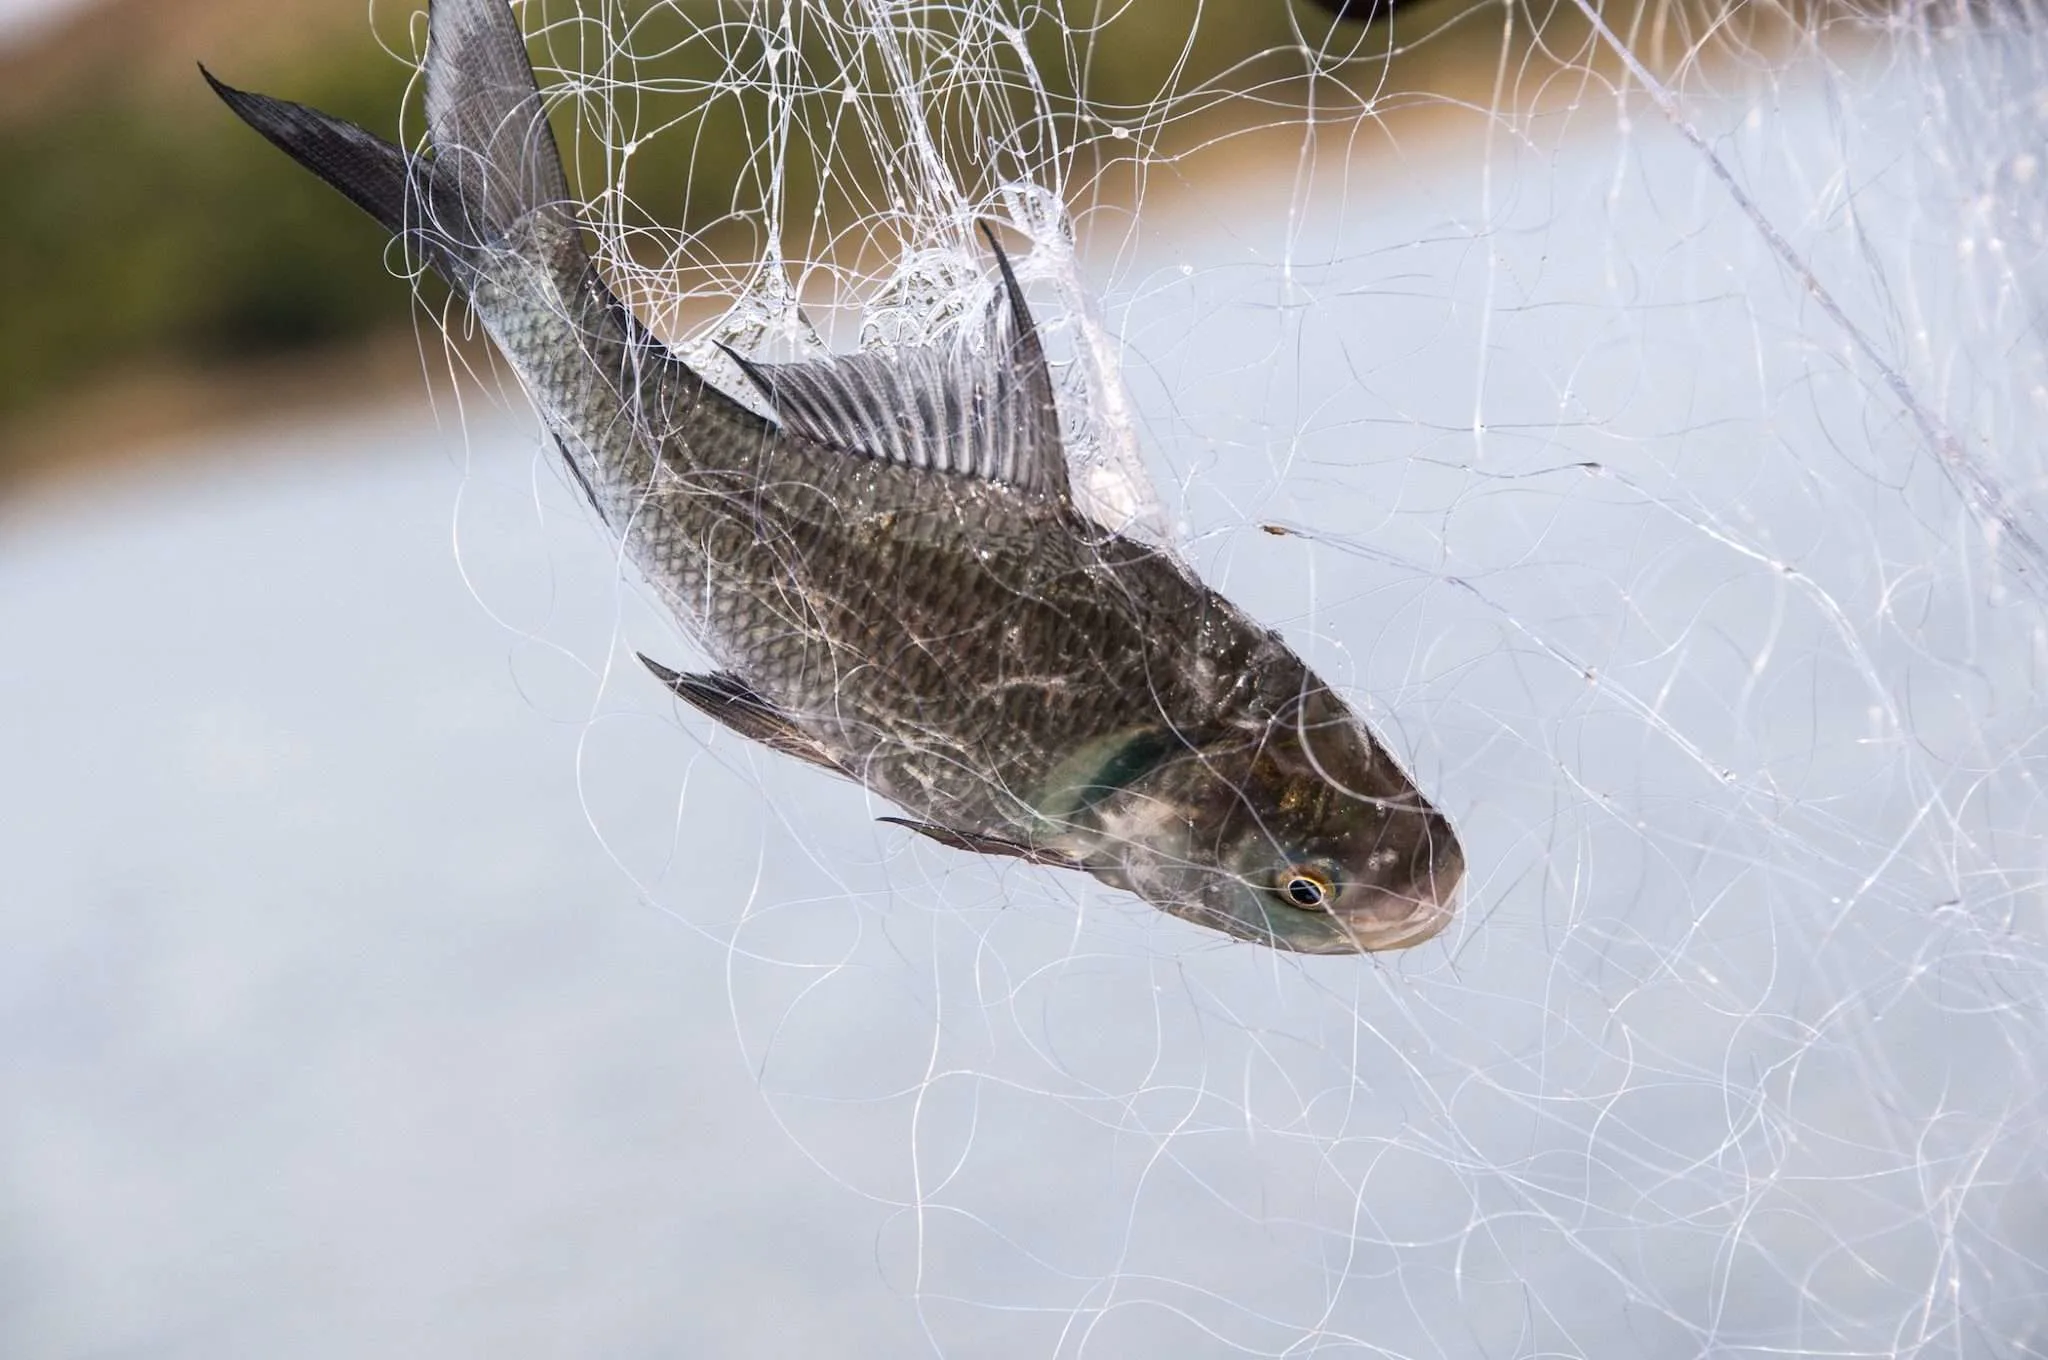 Fresh fish in a fishing net